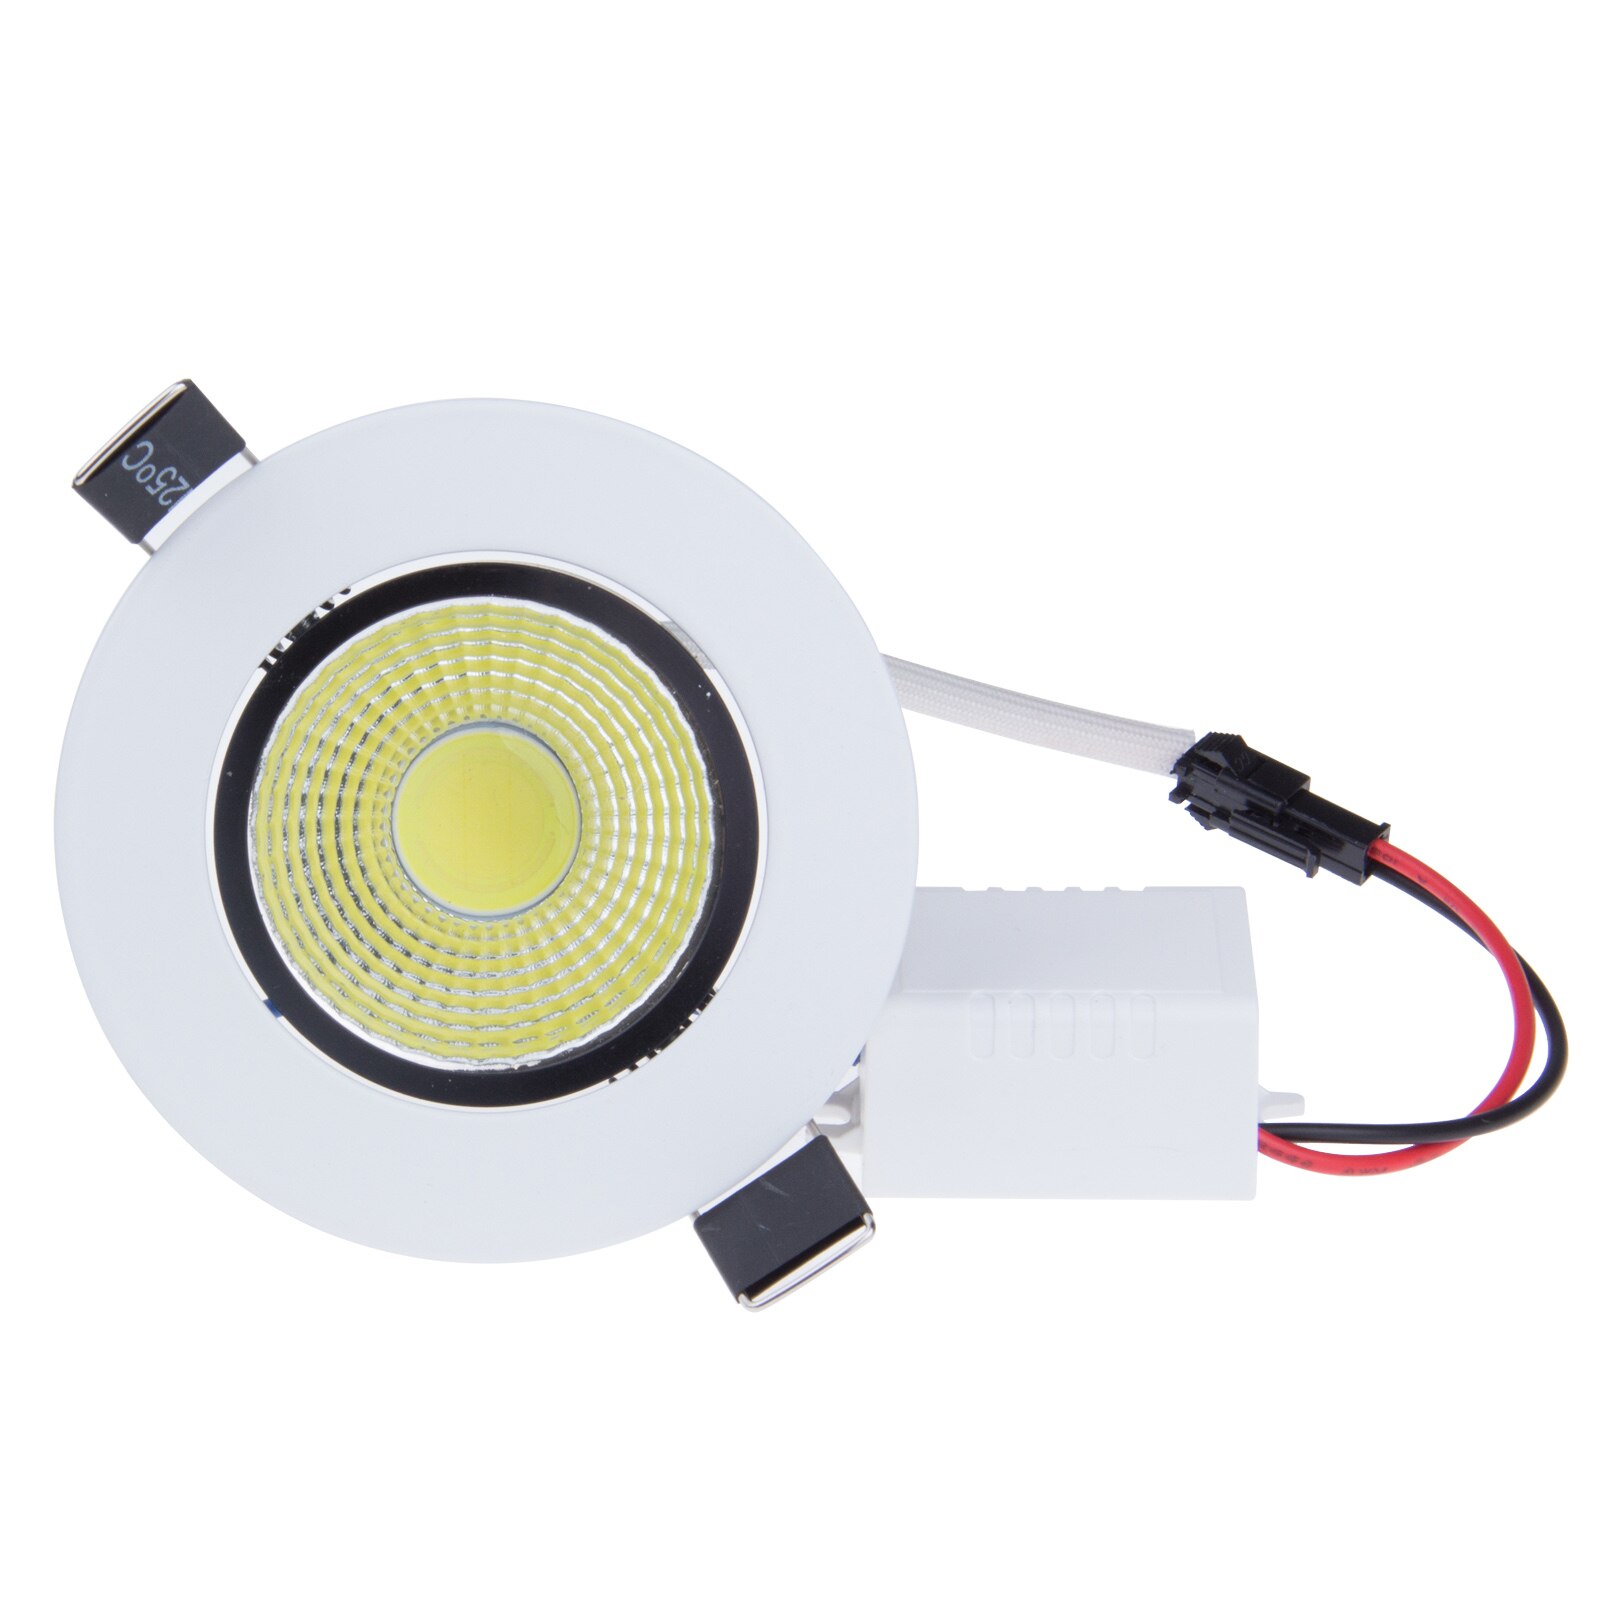 Model LED Dimbare Downlight COB 5 w LED Spot Light LED Decoratie Plafondlamp AC 220 v